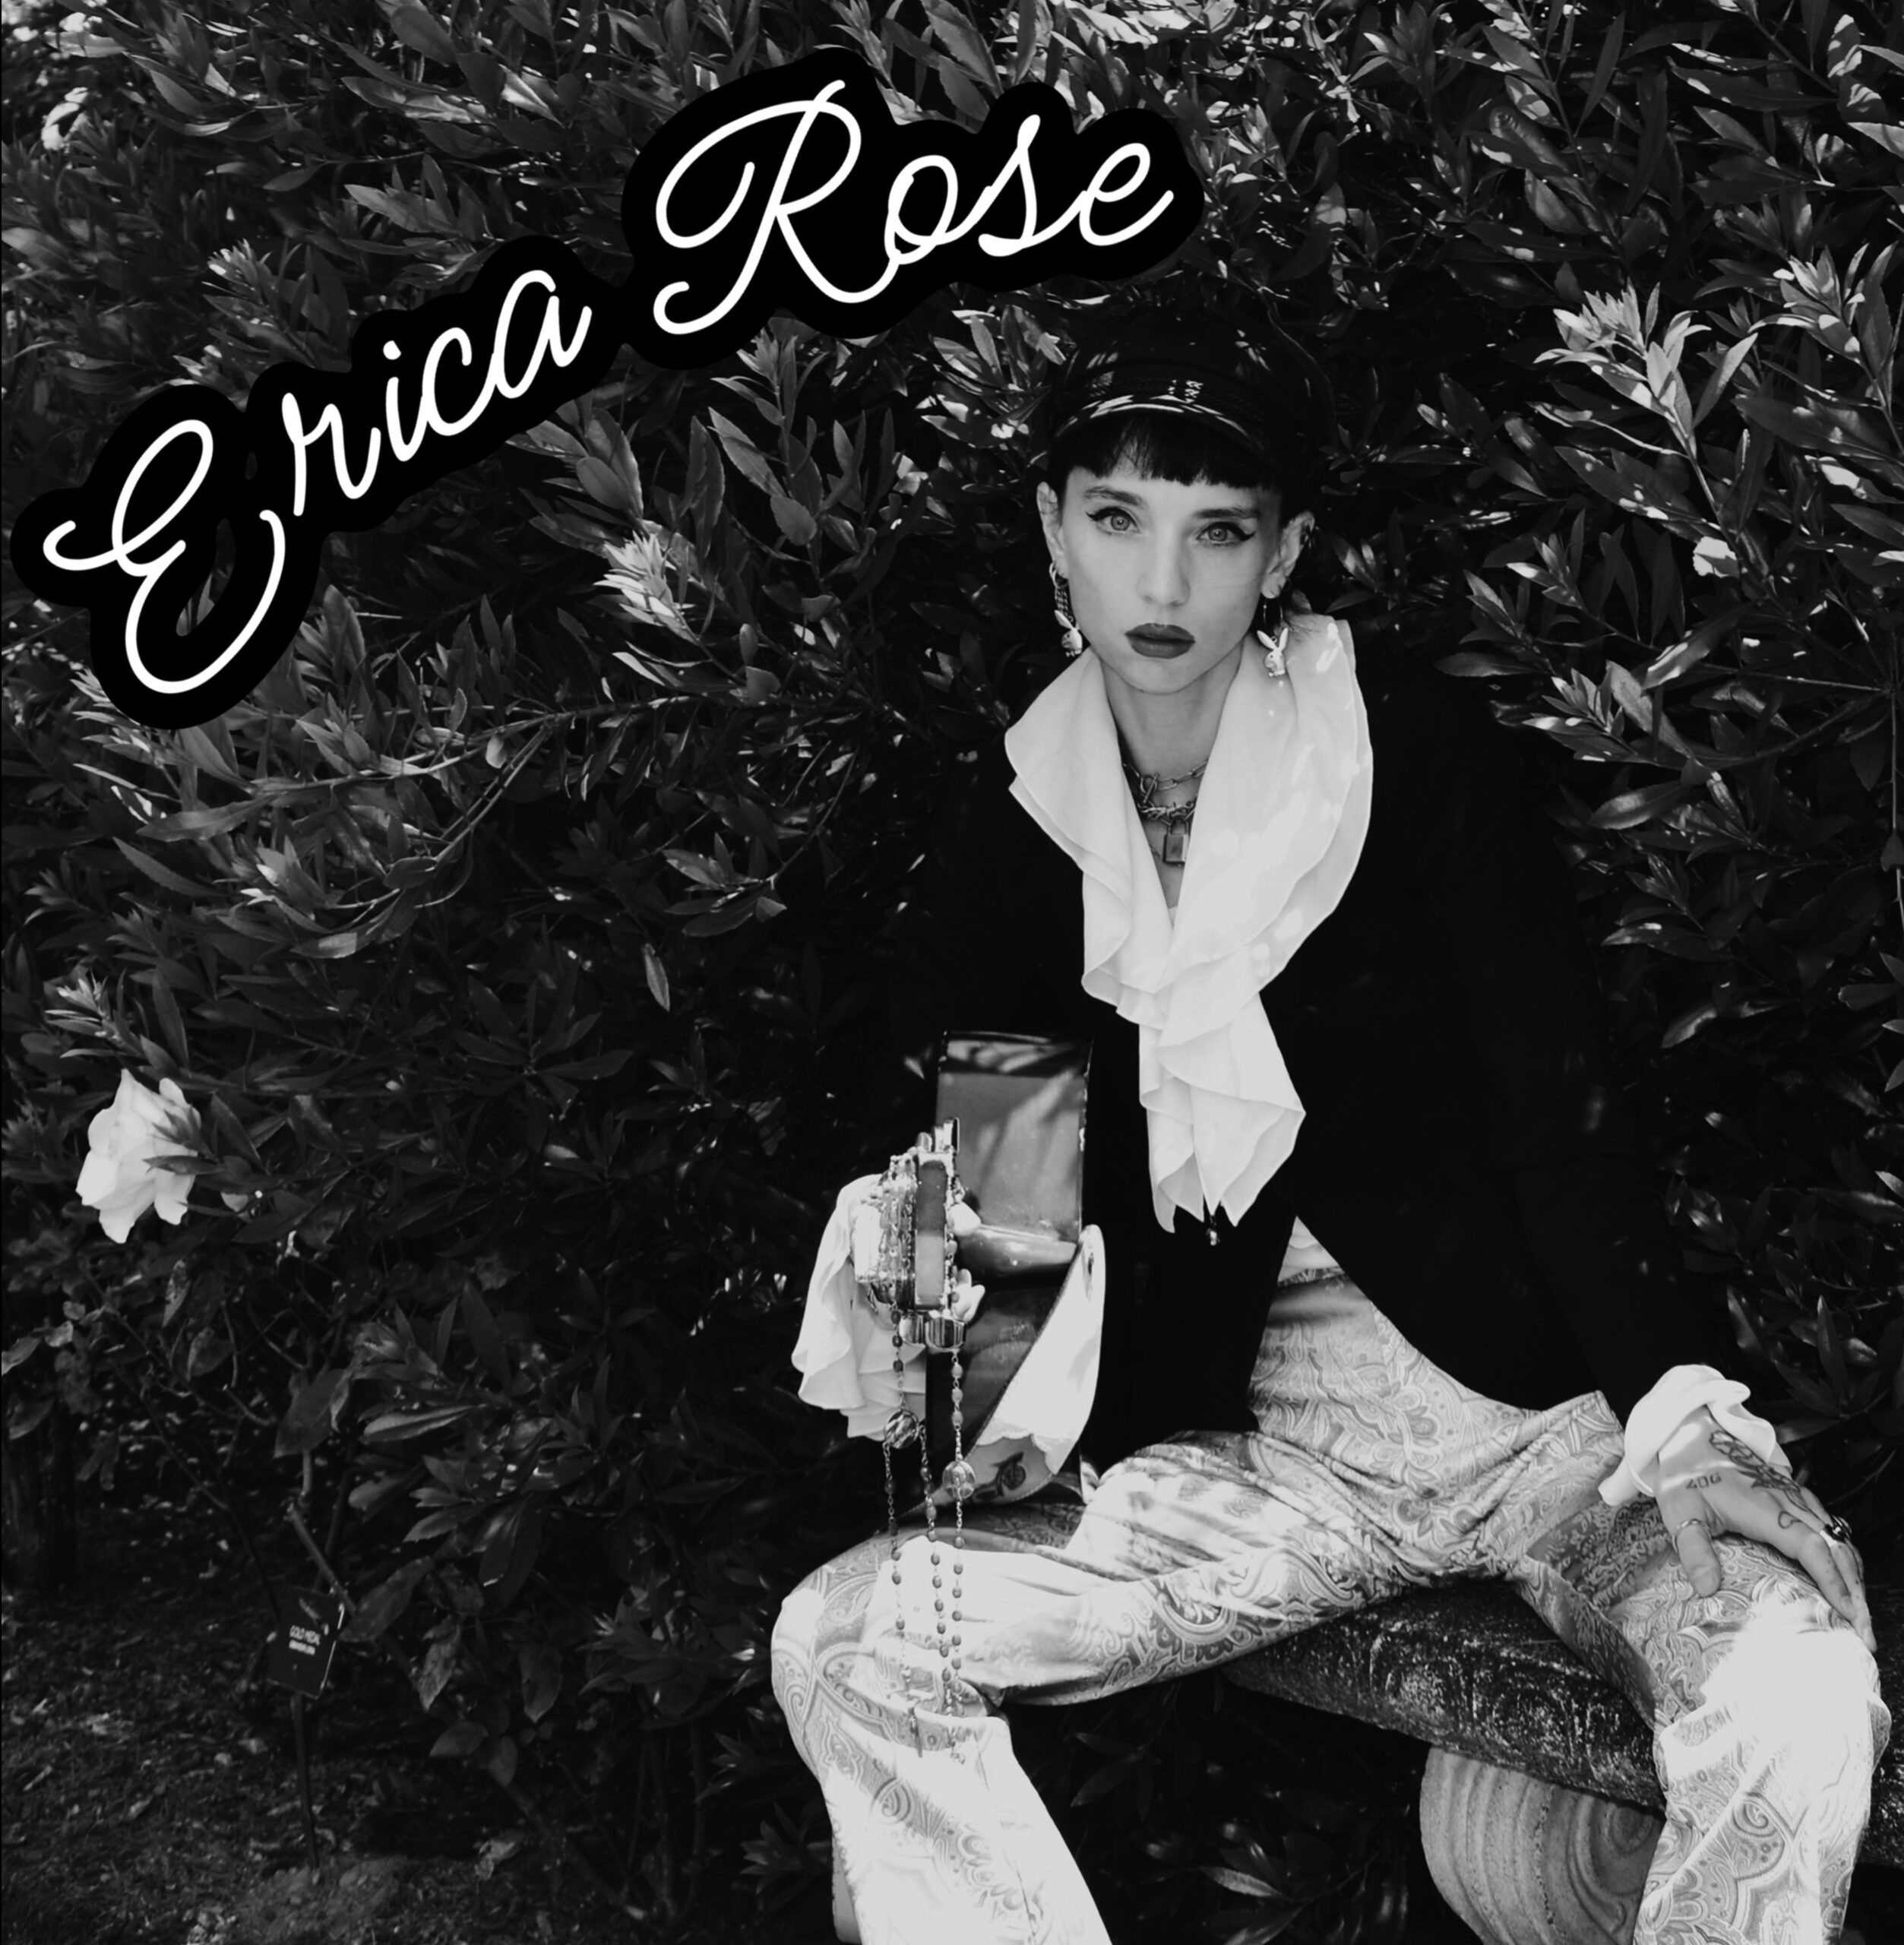 Erica Rose - Erica Rose: Vinyl, 12